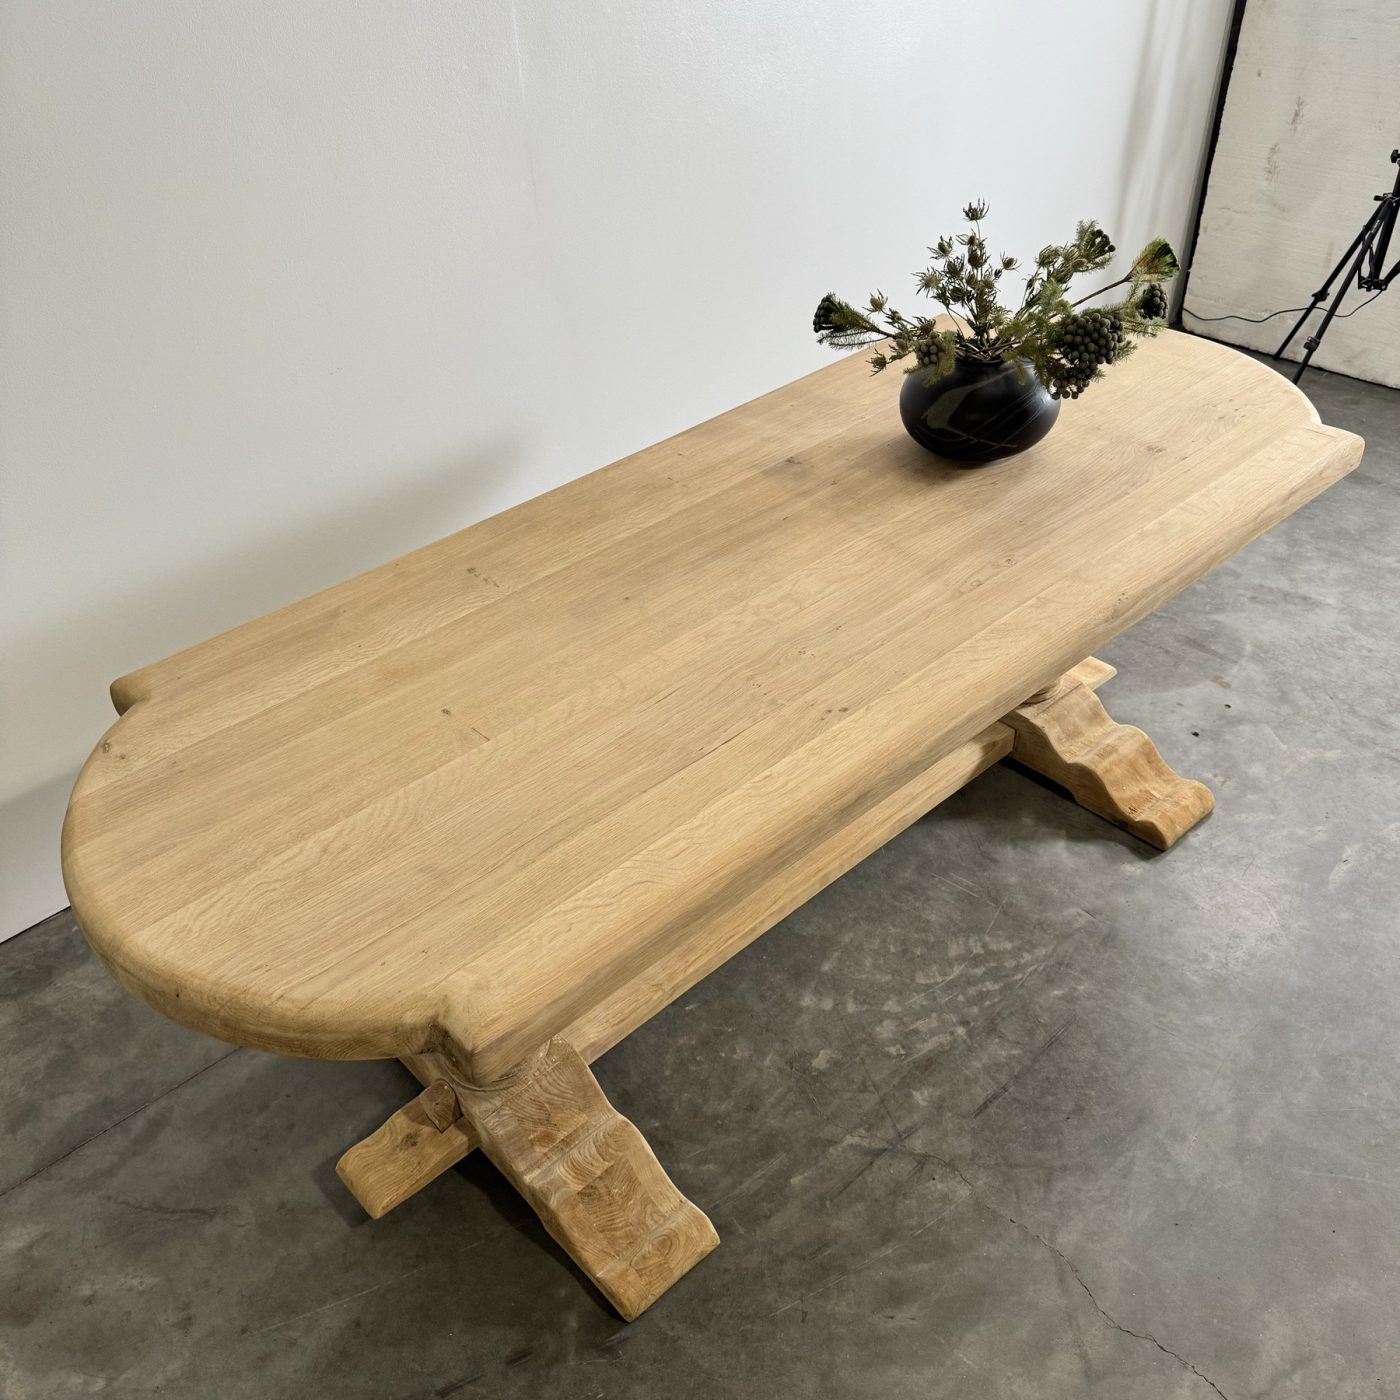 objet-vagabond-oak-table0008